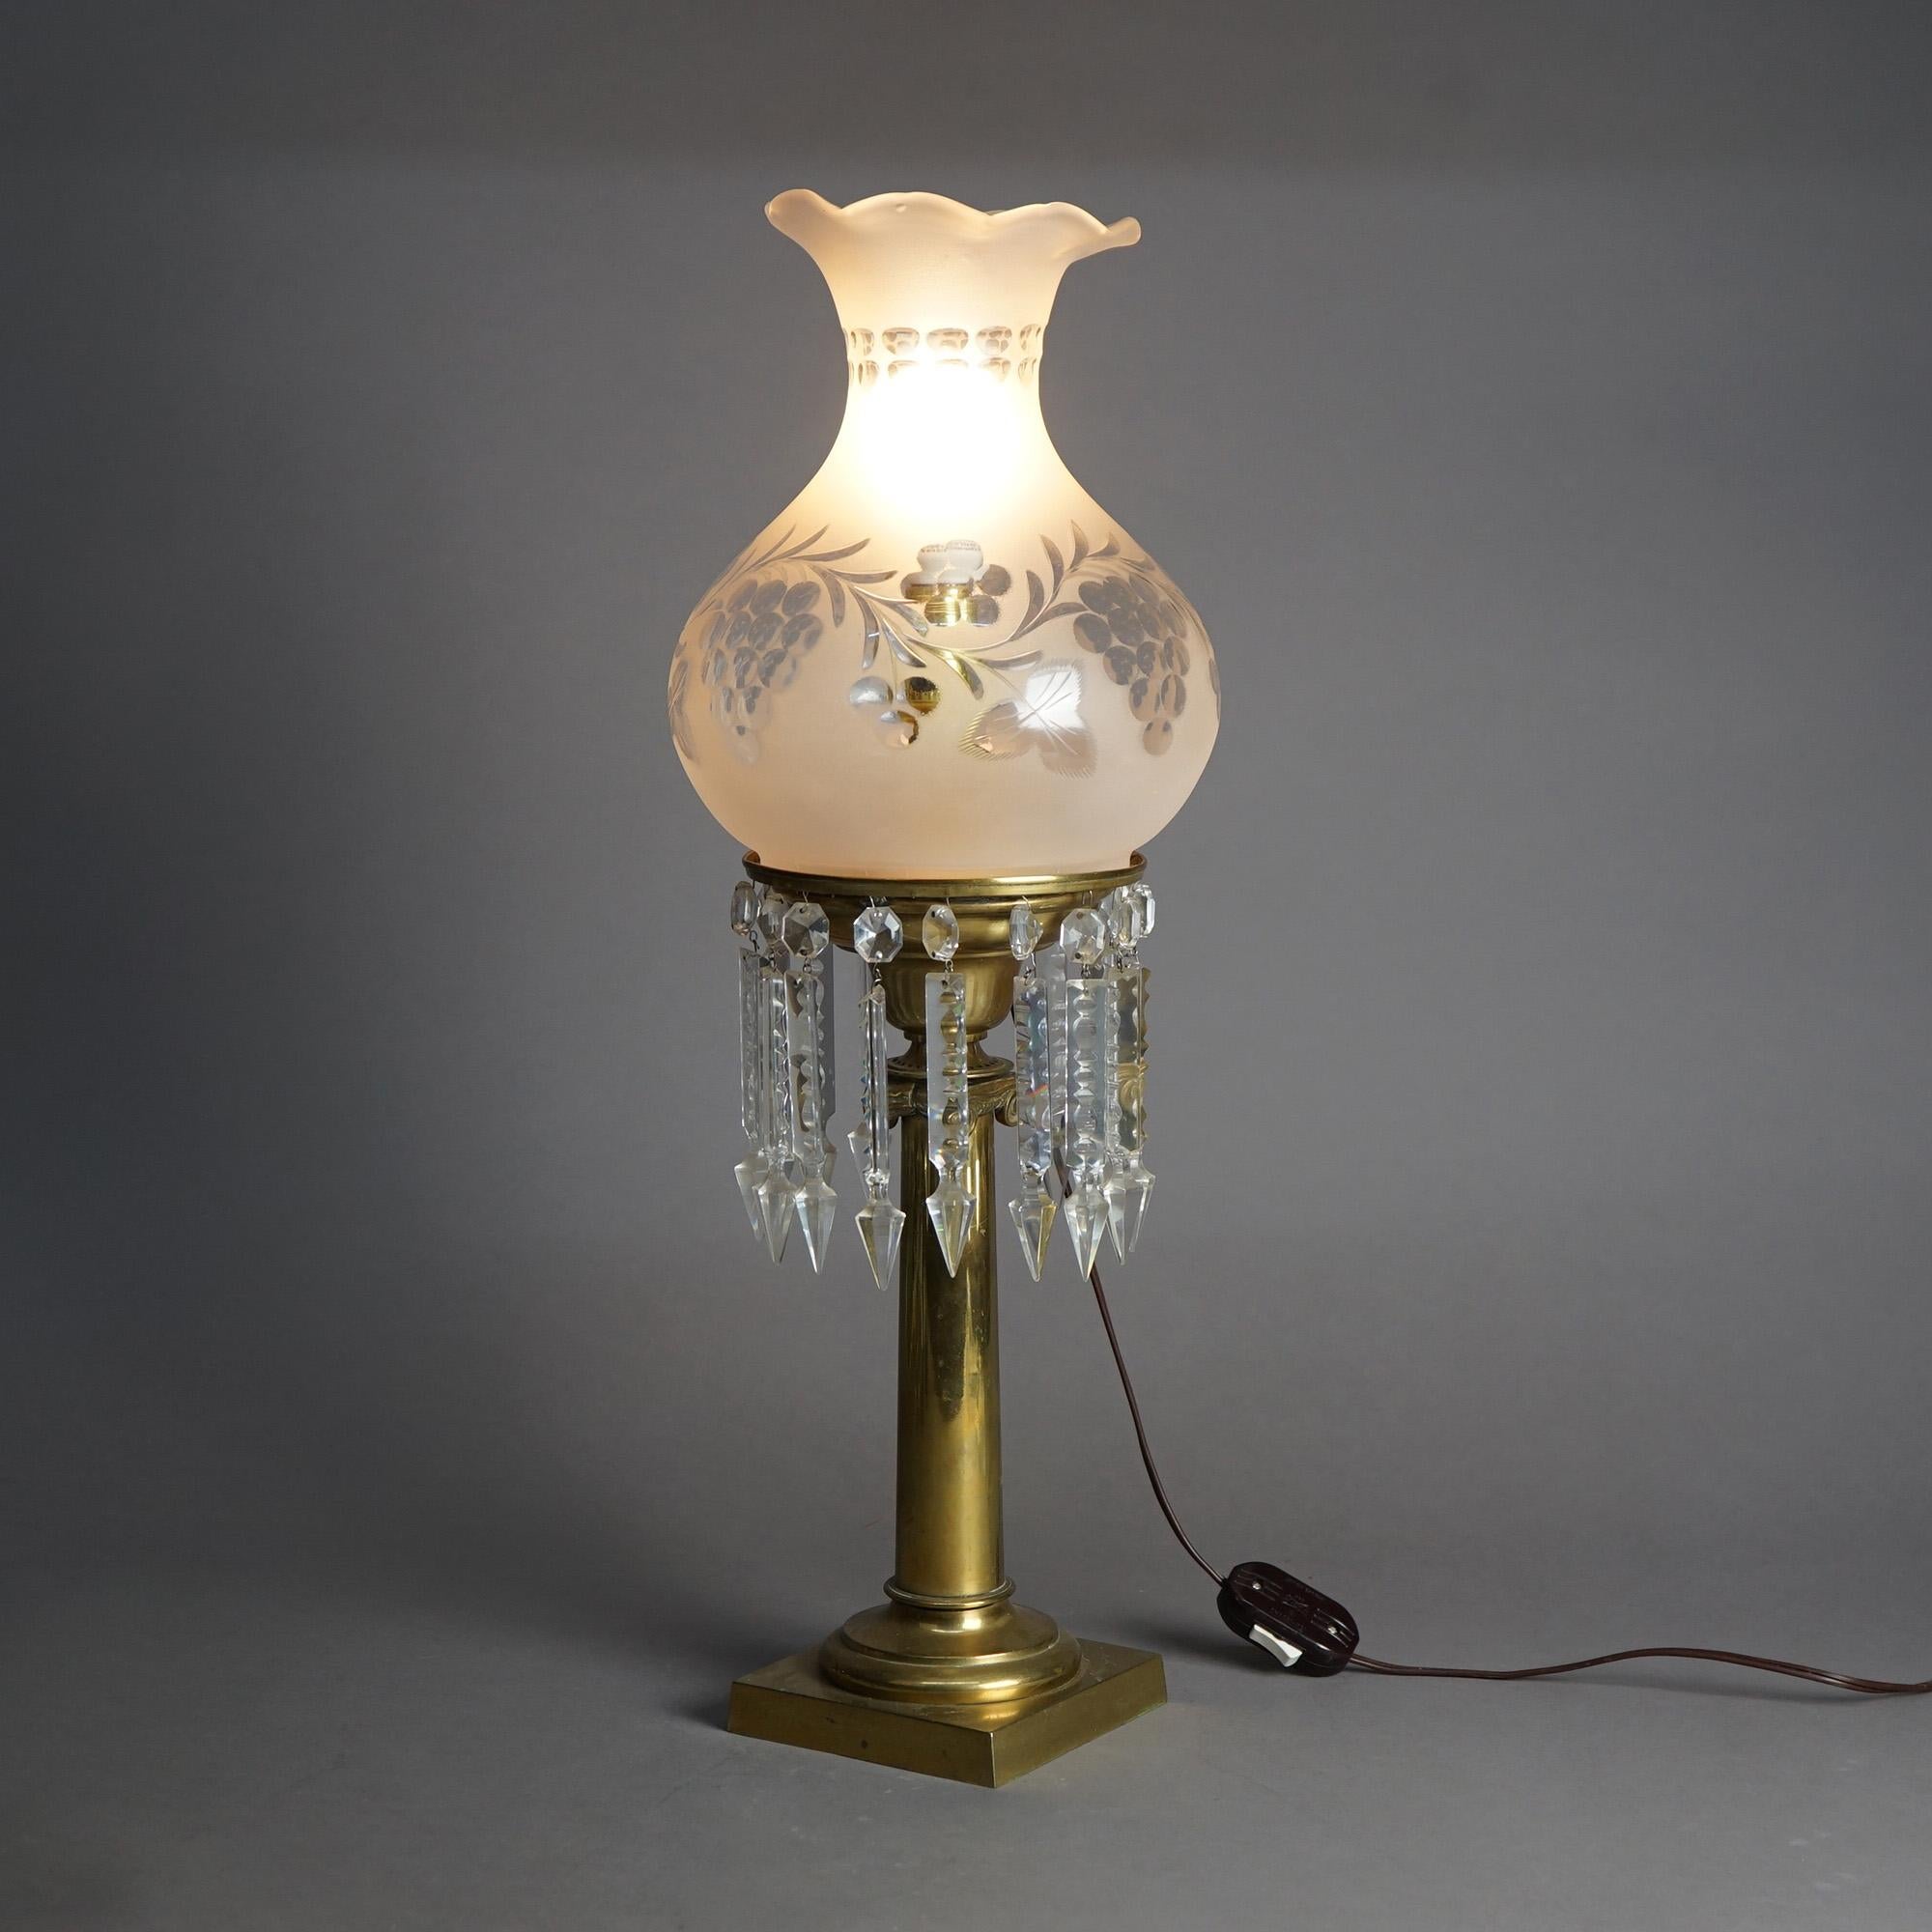 Eine antike Solarlampe nach Cornelius bietet klassische Form mit geschliffenem Glasschirm über Messingfuß mit hängenden geschliffenen Kristallen, elektrifiziert, um 1840

Maße: 25''H x 8,25''B x 8,25''T